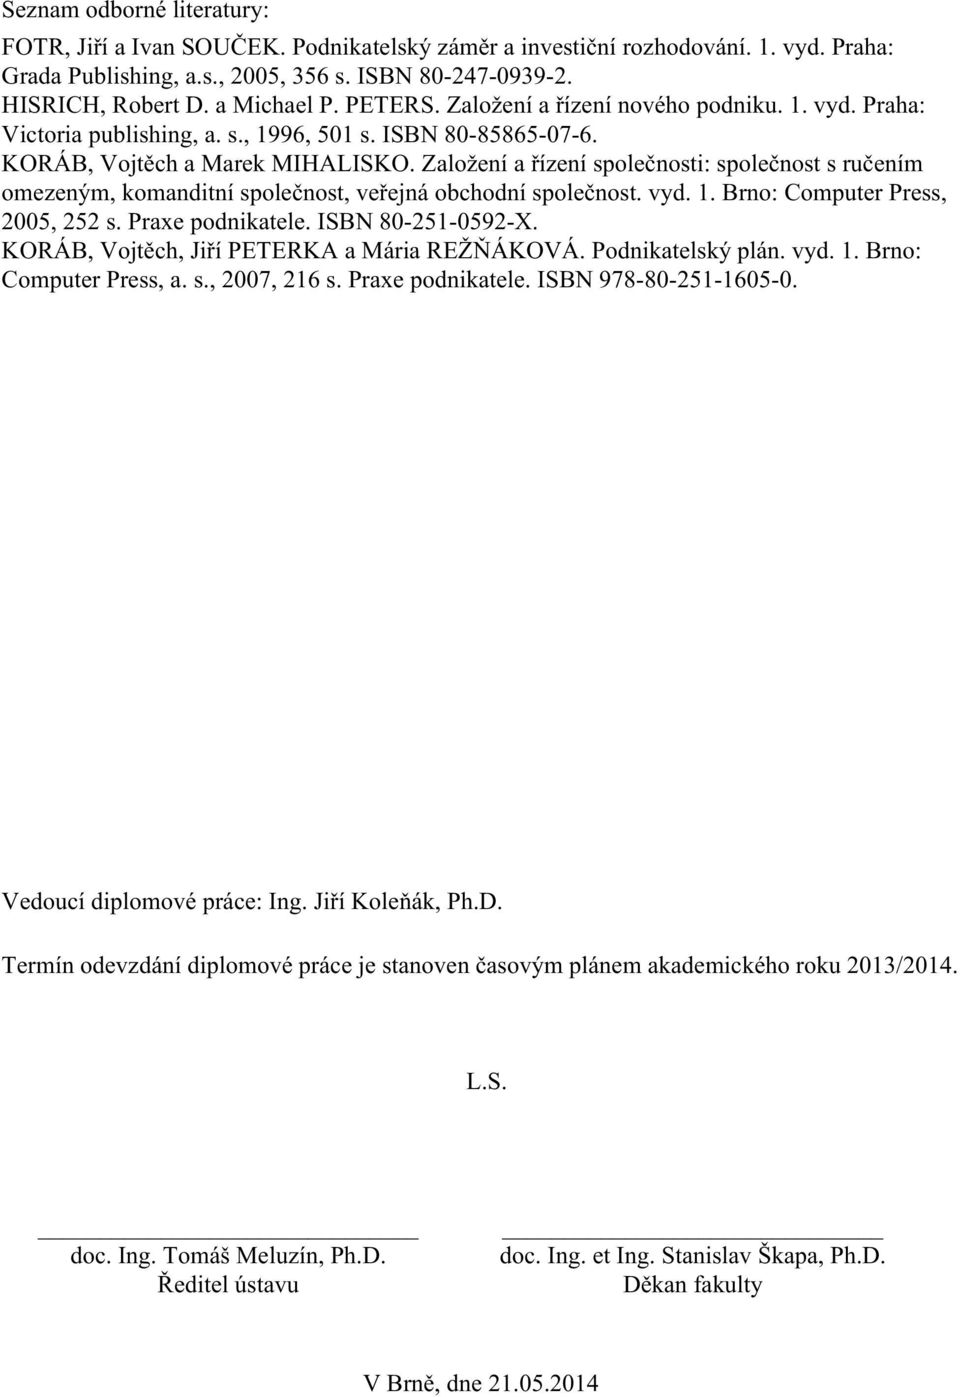 Založení a řízení společnosti: společnost s ručením omezeným, komanditní společnost, veřejná obchodní společnost. vyd. 1. Brno: Computer Press, 2005, 252 s. Praxe podnikatele. ISBN 80-251-0592-X.